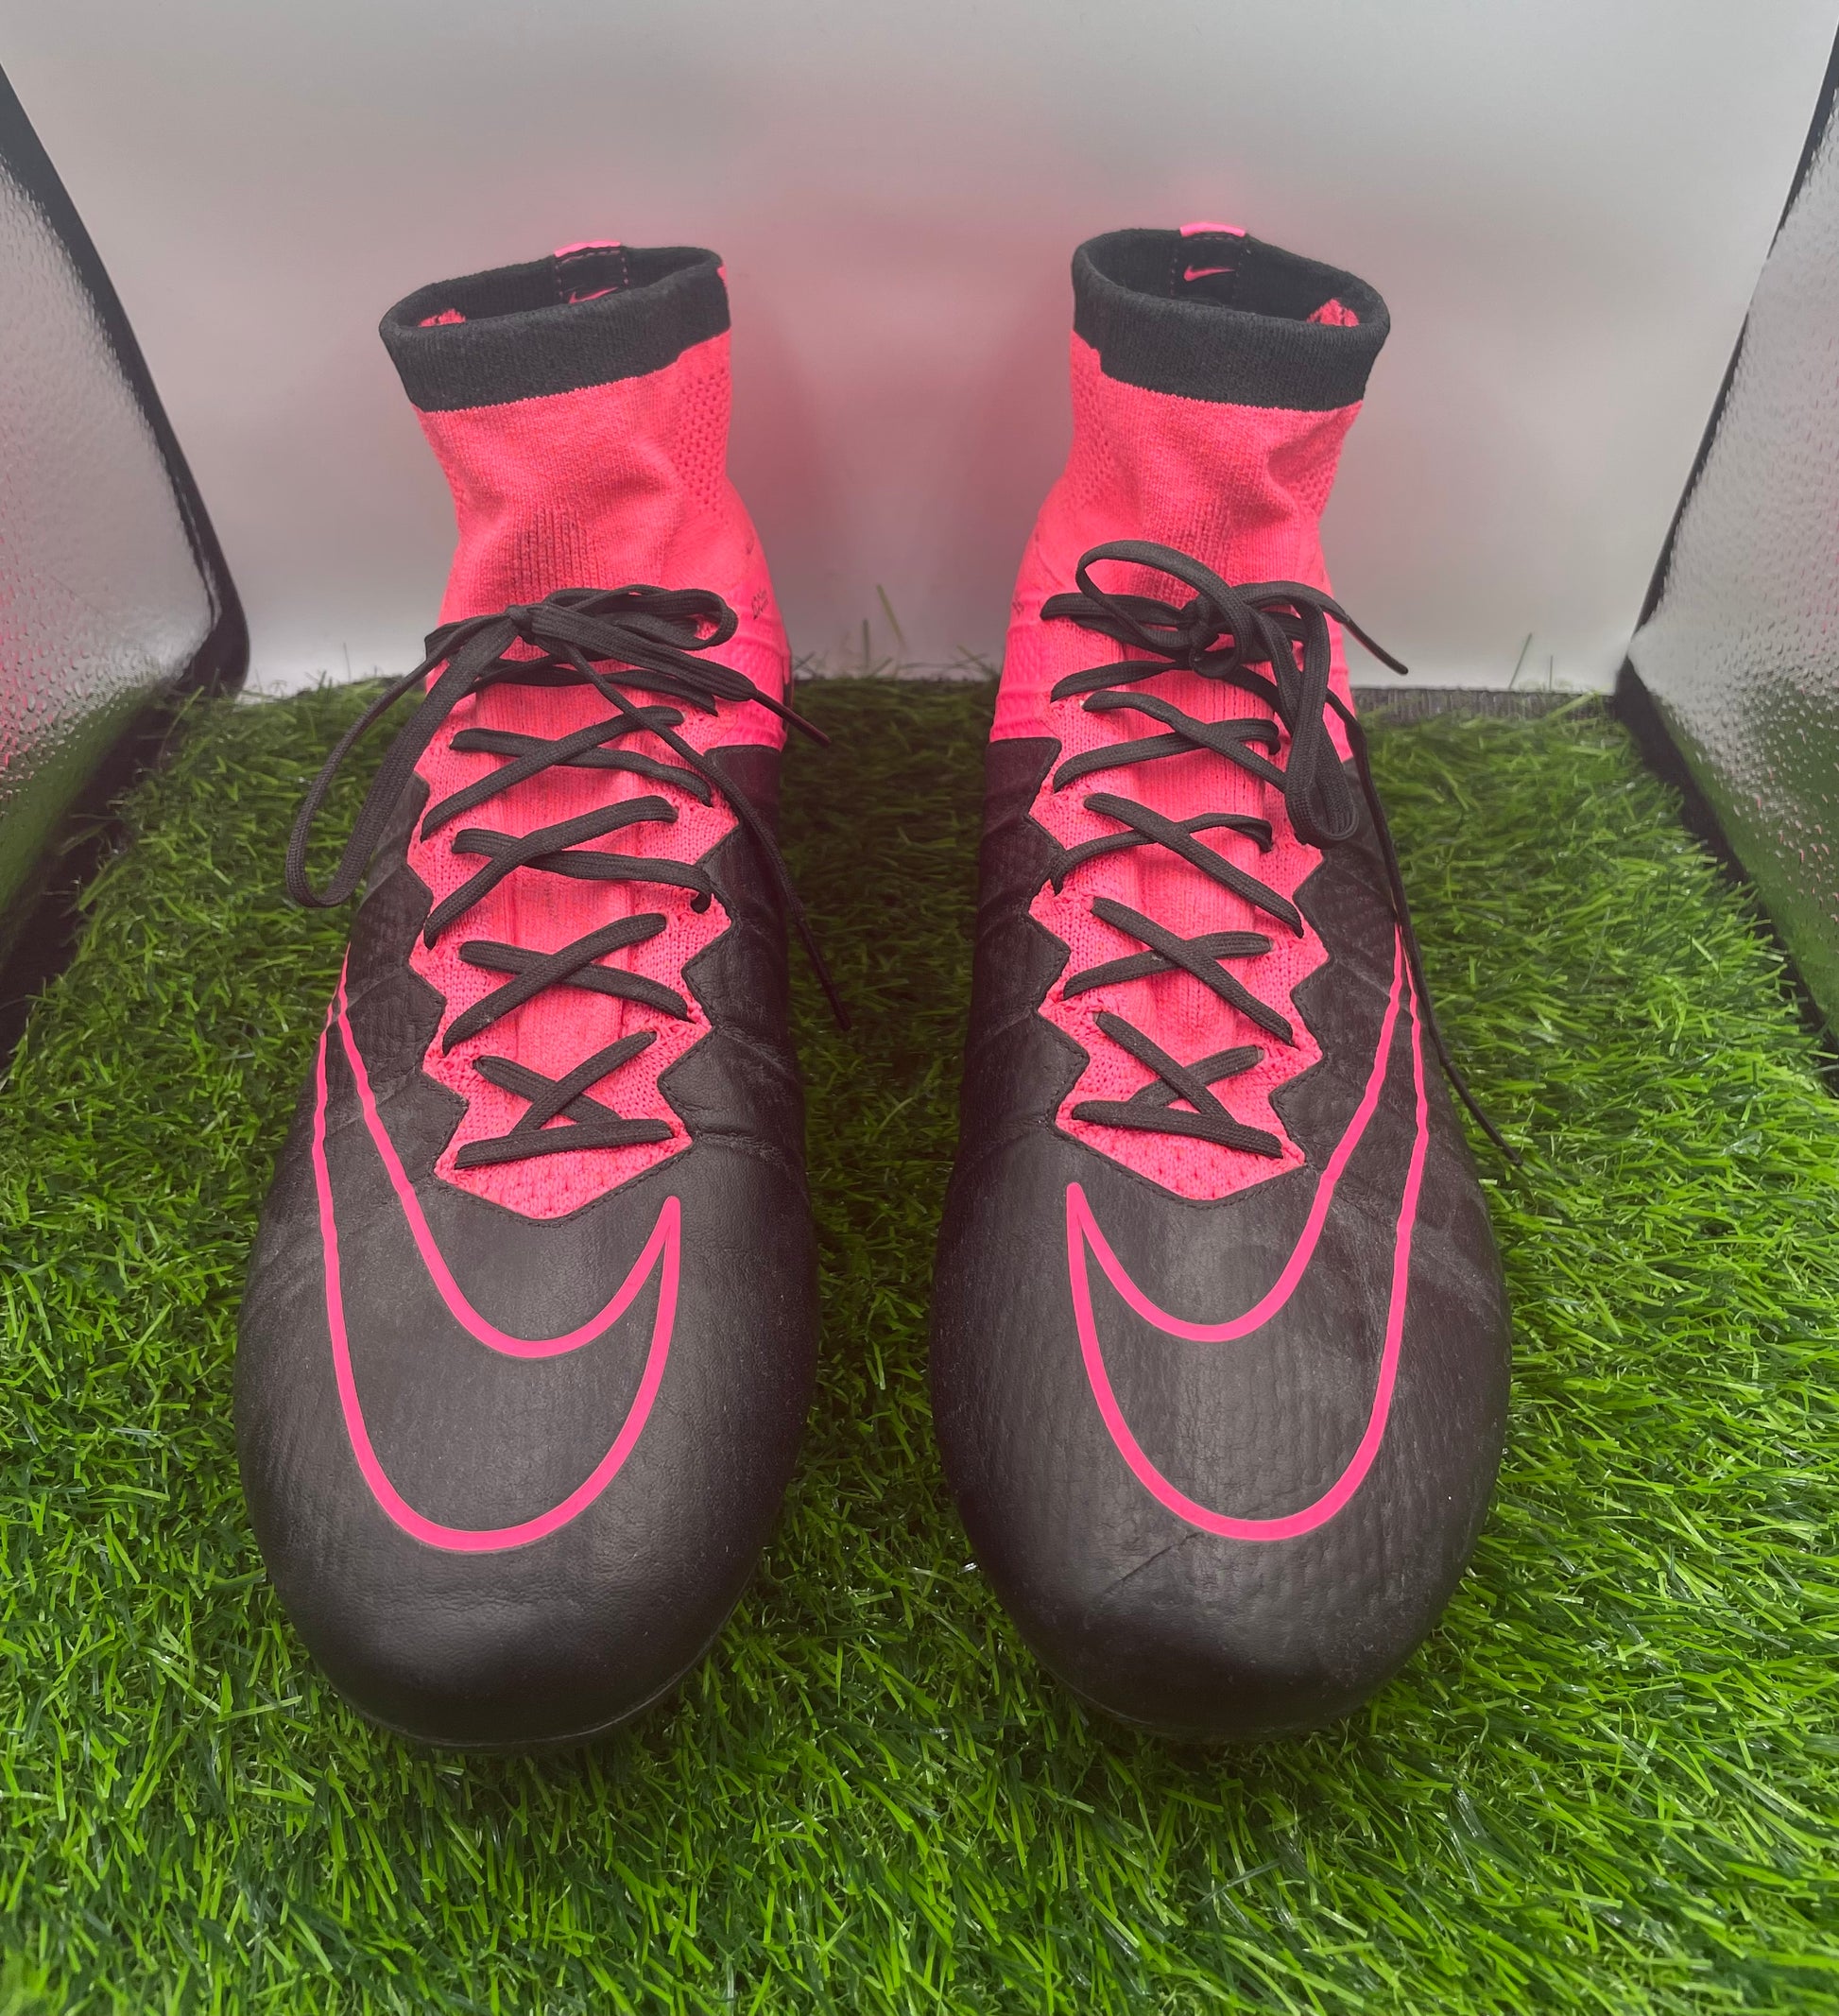 inhoud uitvegen video Nike mercurial superfly 3 pink/black SG – Beyond boots